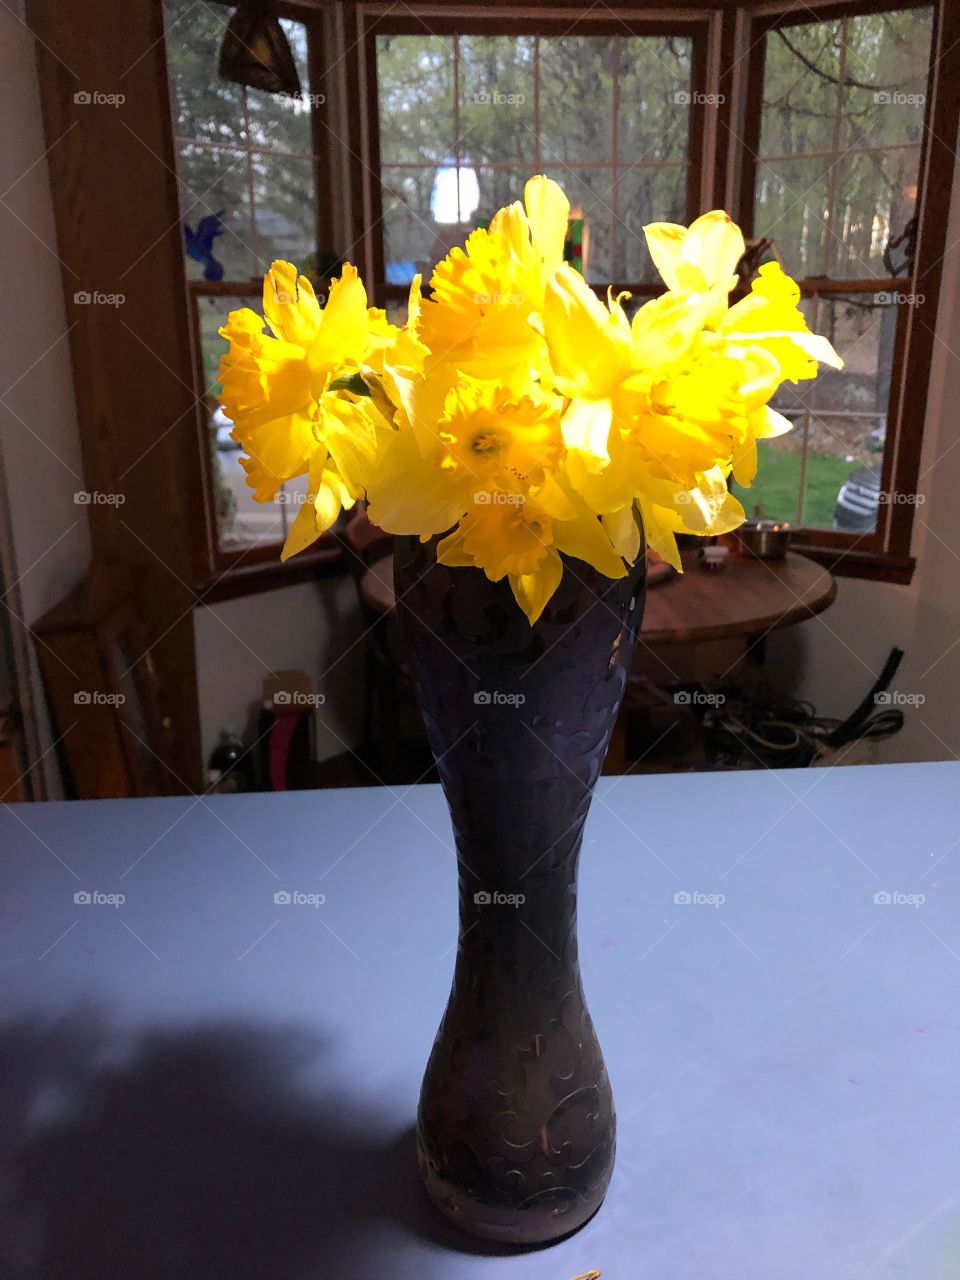 Daffodil flowers  